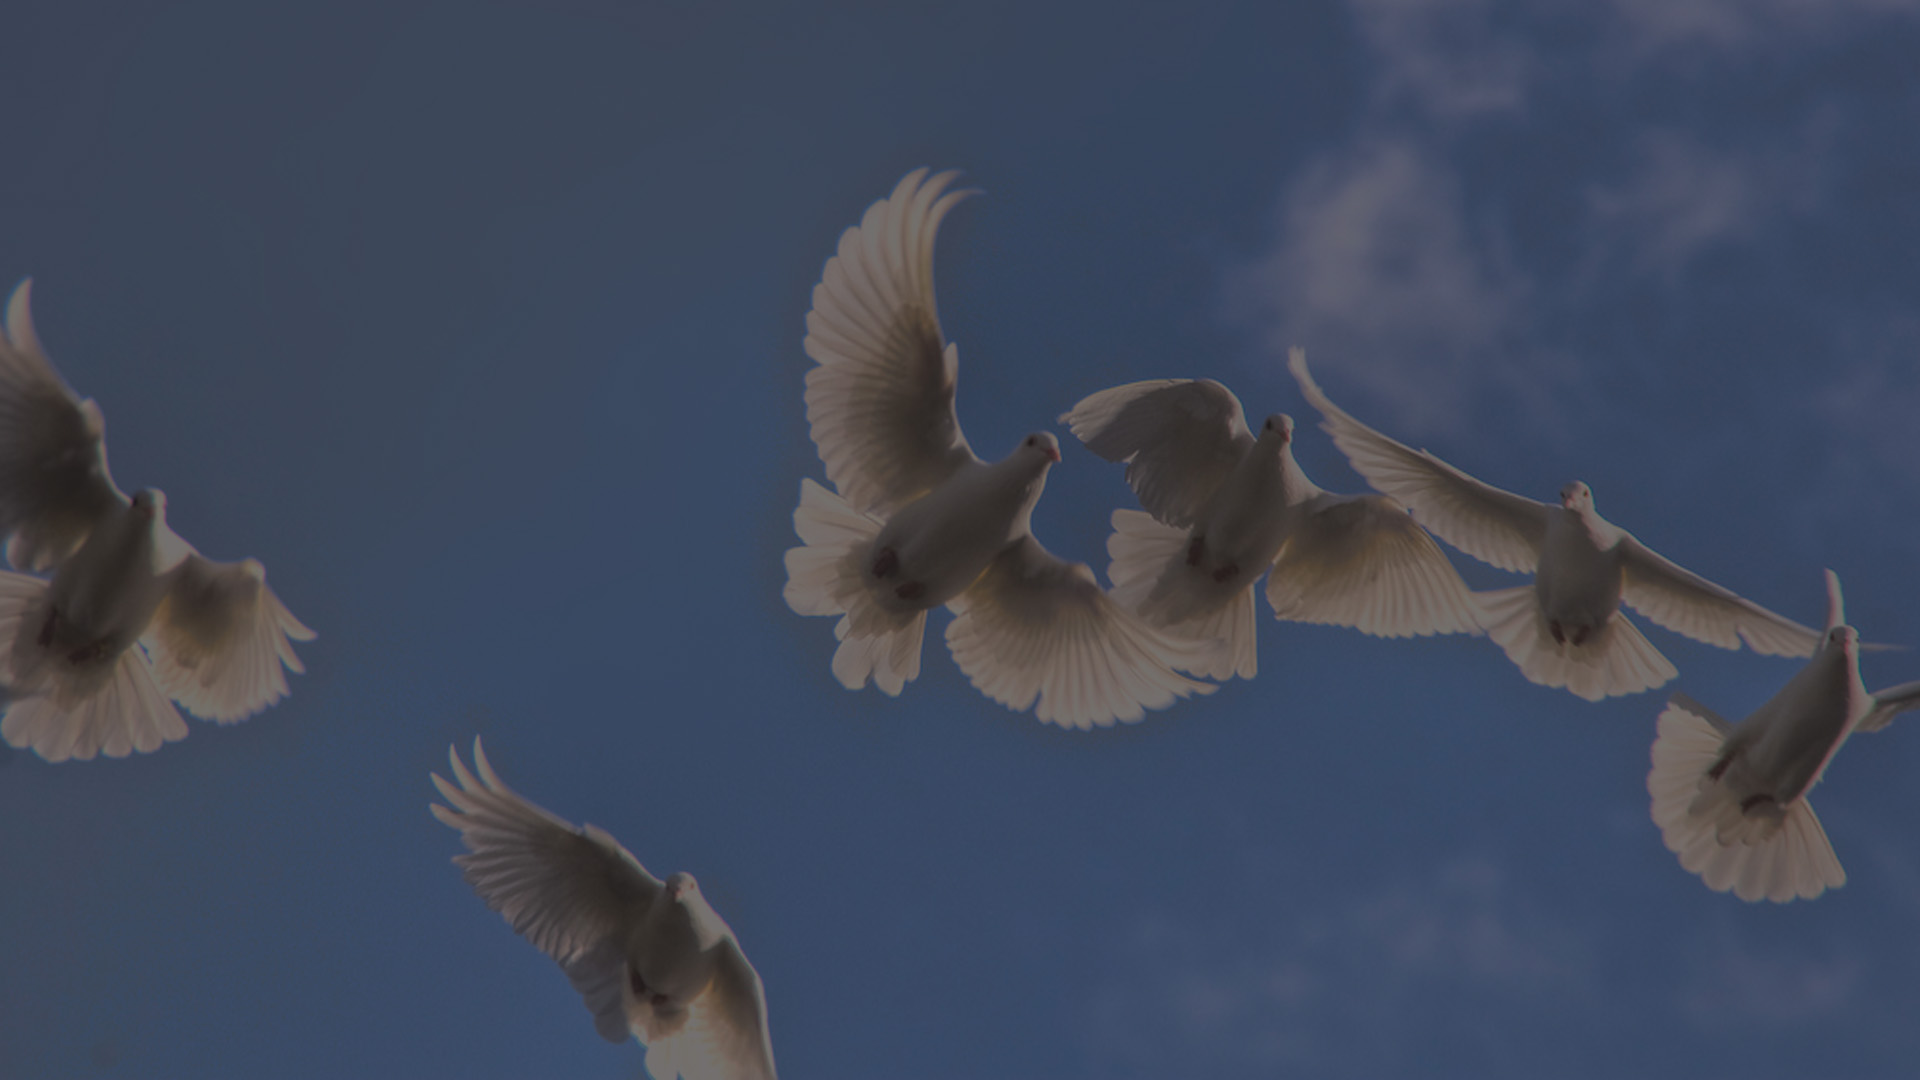 peace-dove-grey-tint-72dpi